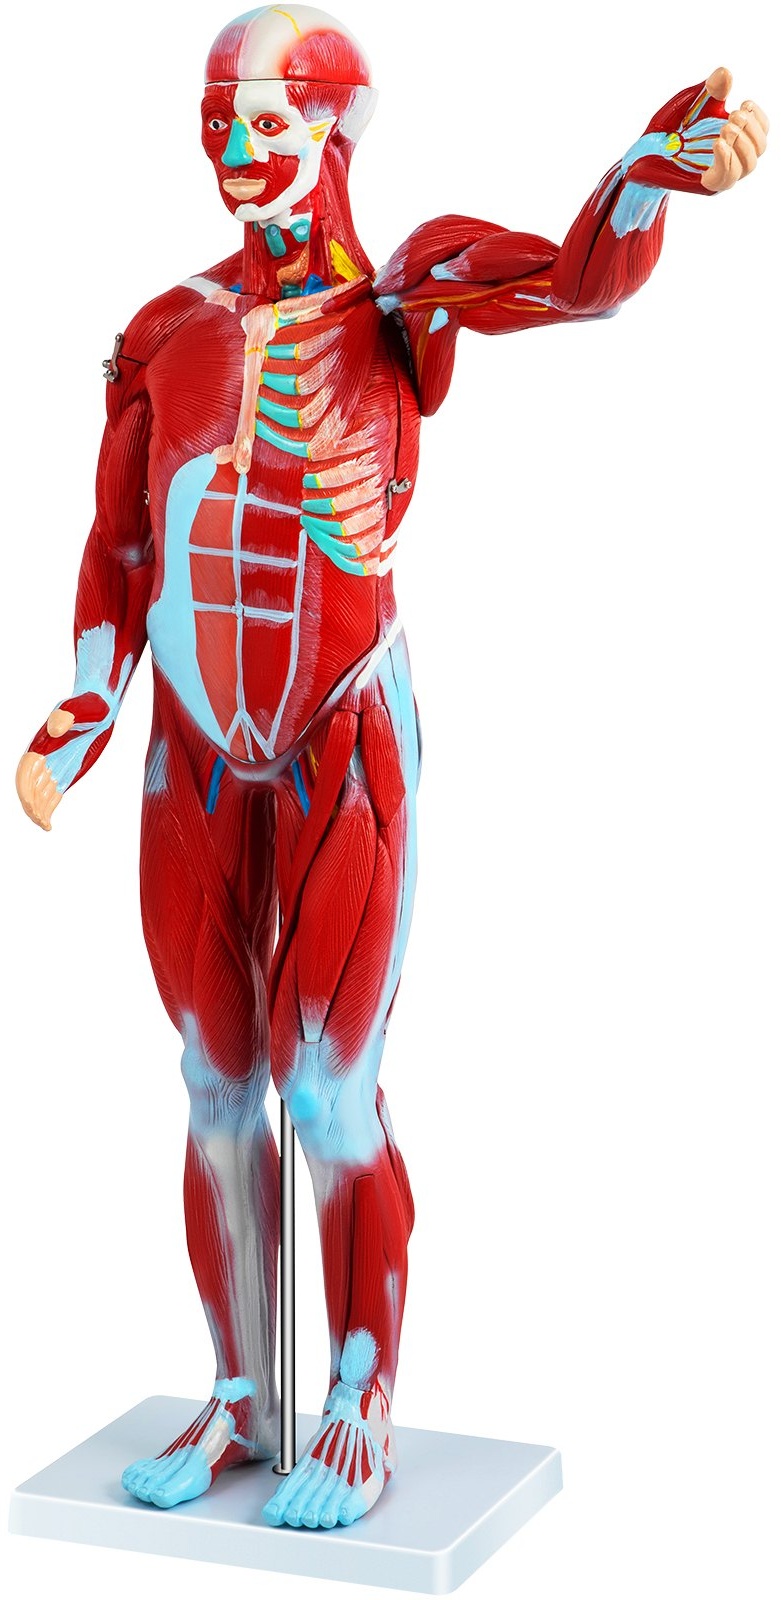 VEVOR 27-teilig, Anatomie Modell Torso des Menschen Anatomiemodell Menschlicher Körper Anatomisches Menschliches Model Menschliche Modelle Lehrmodell mit Organe, Zum Lernen und Anzeigen Muskelsystem